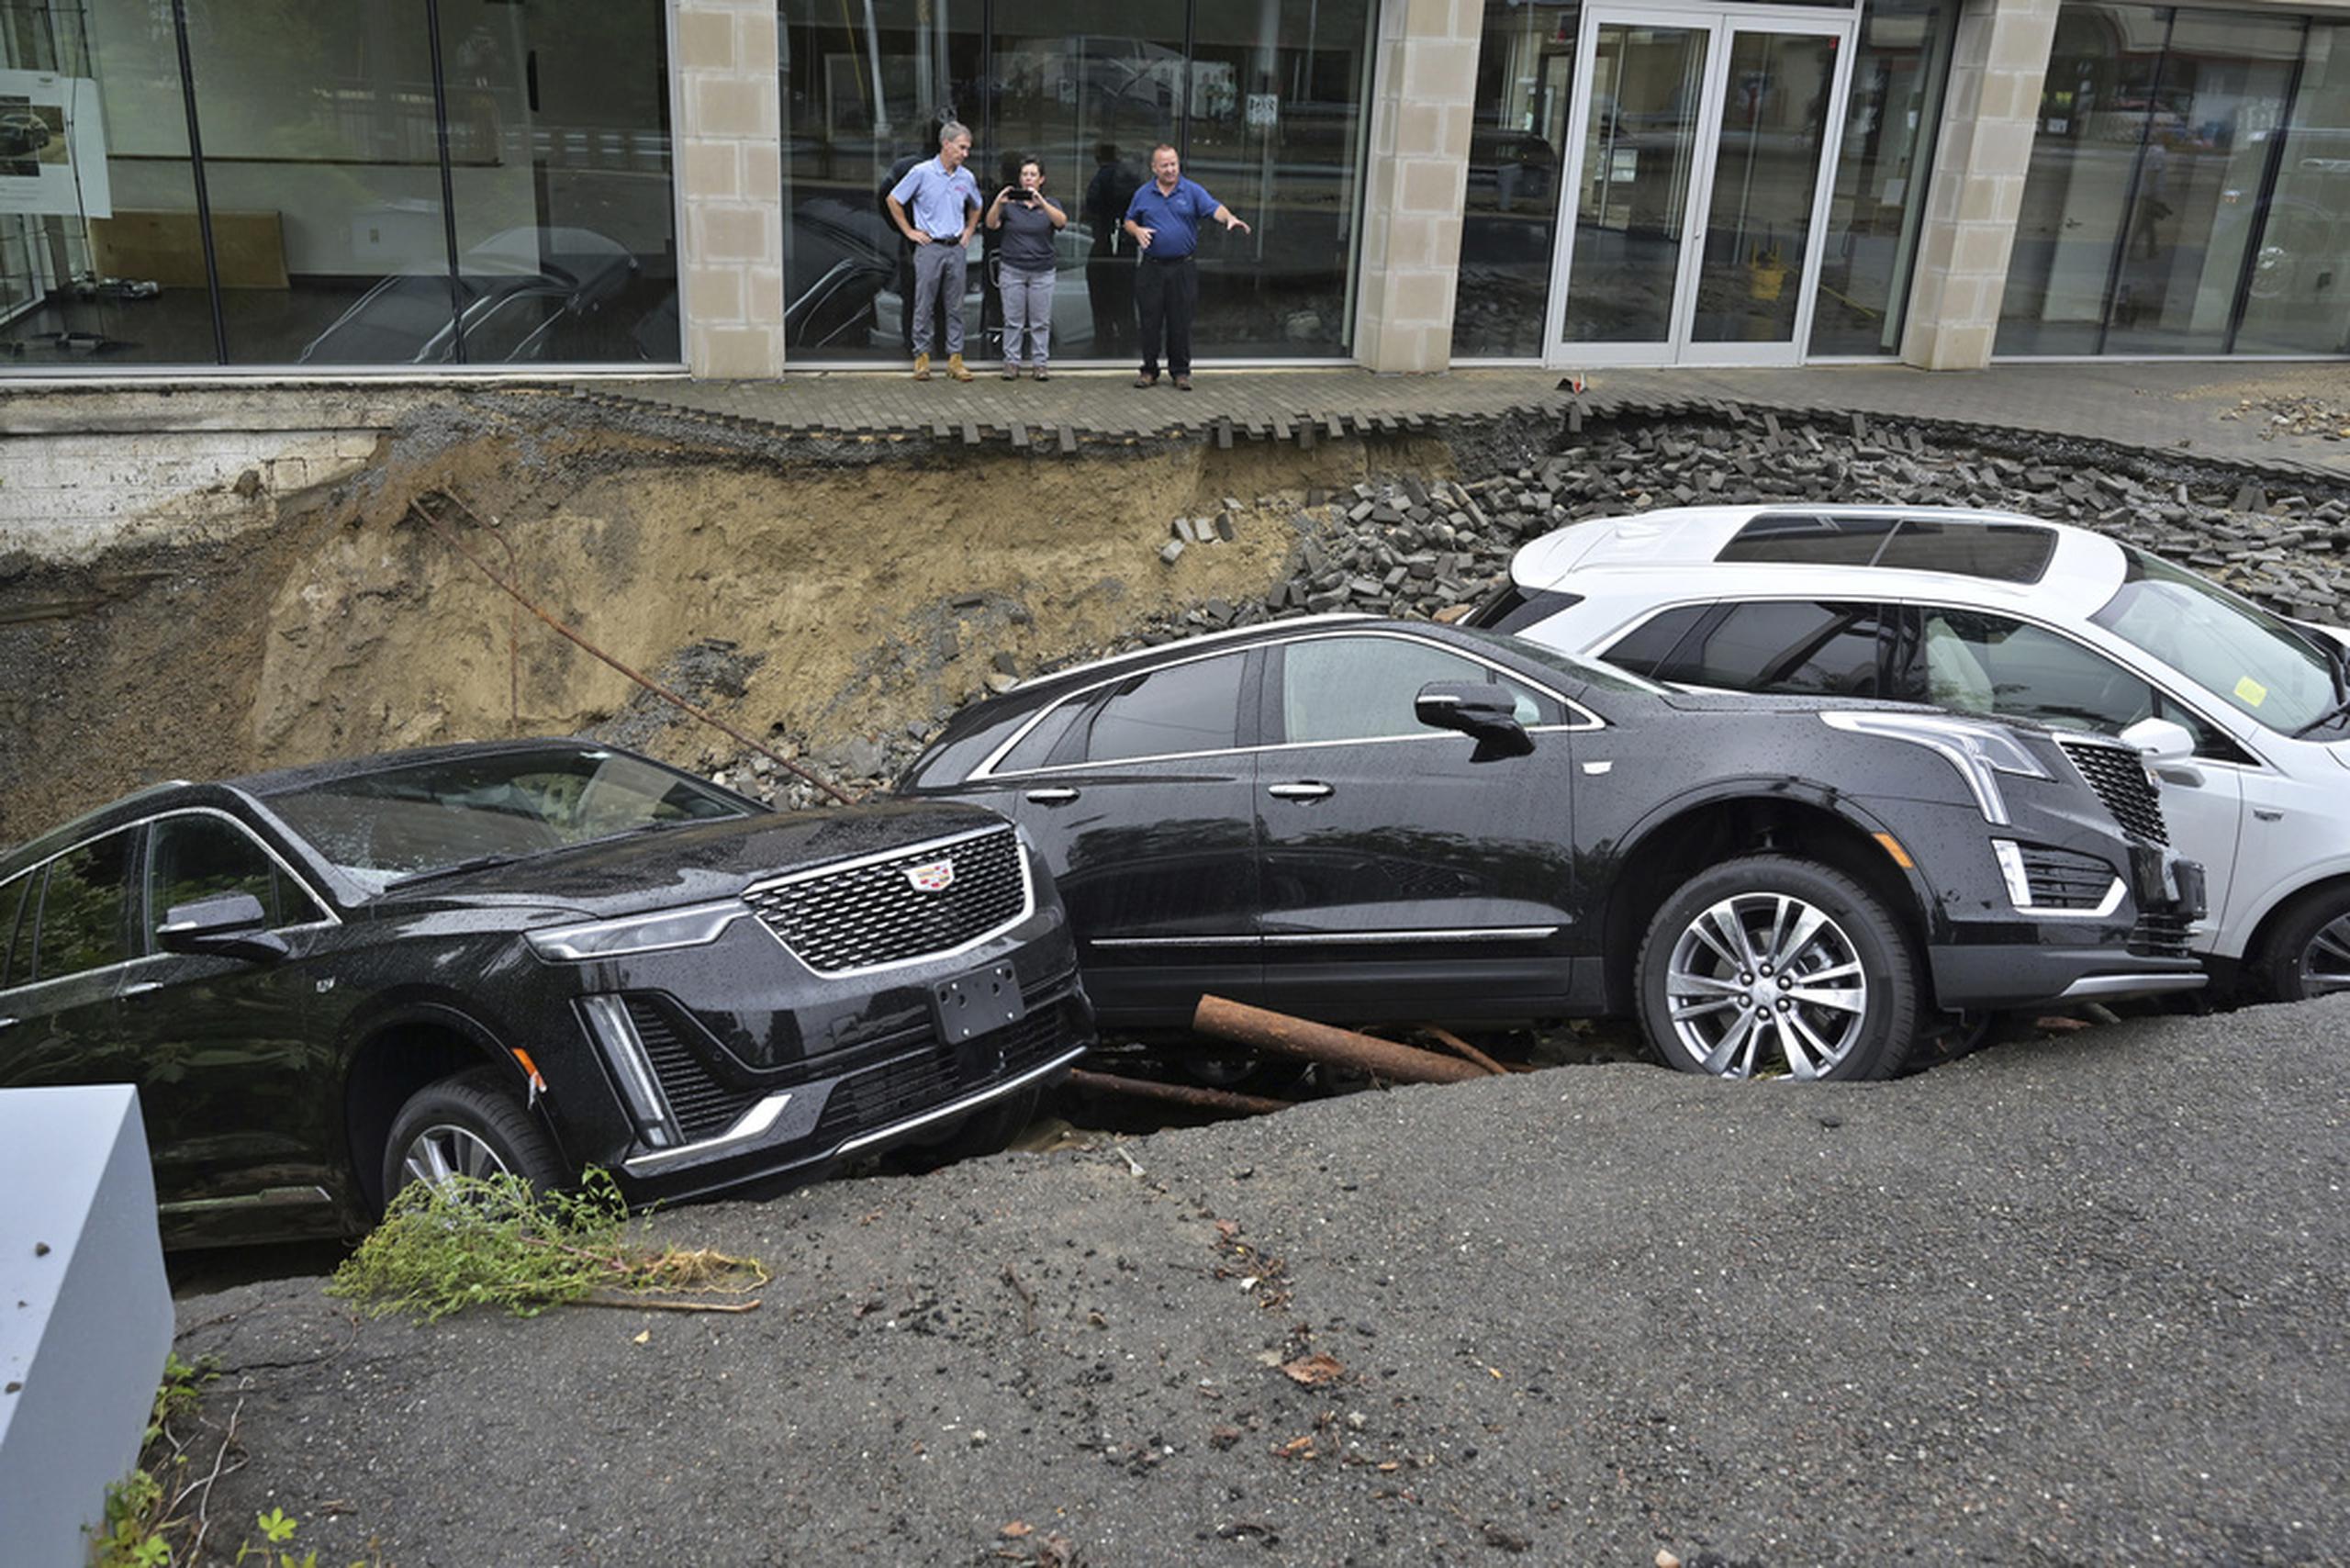 Tres vehículos cayeron en un sumidero en los predios de un concesionario de autos el martes en Leominster, Massachusetts.